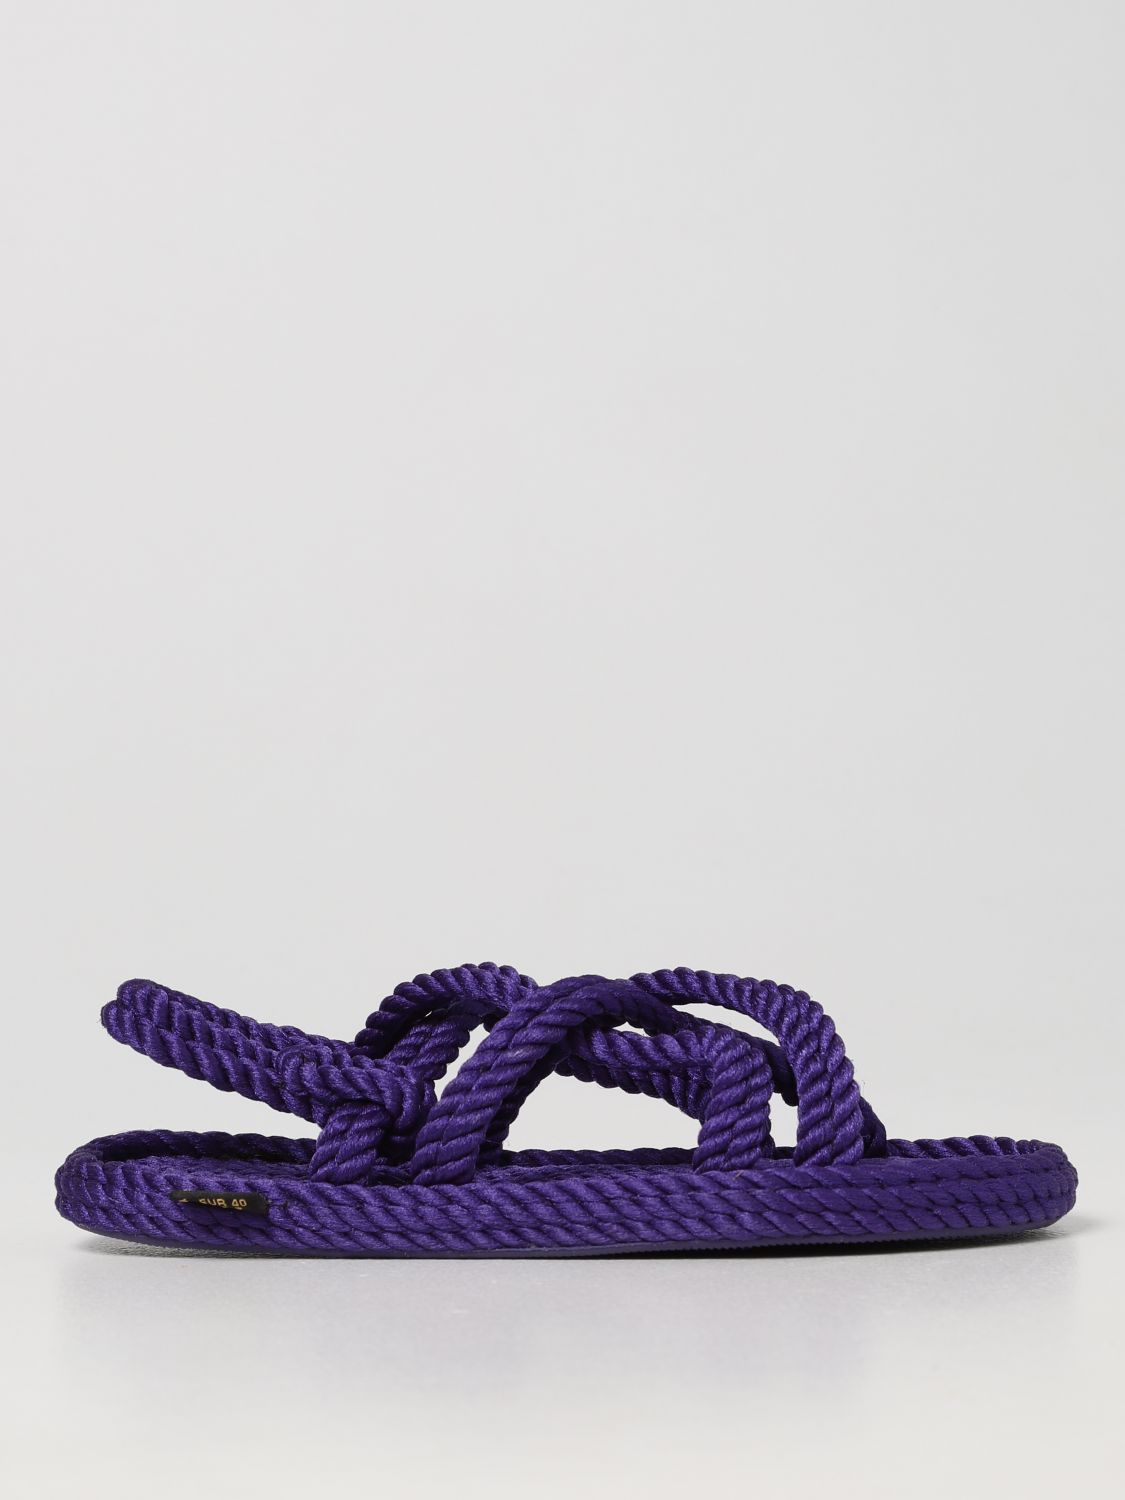 Flache Sandalen Bohonomad: Schuhe damen Bohonomad violett 1